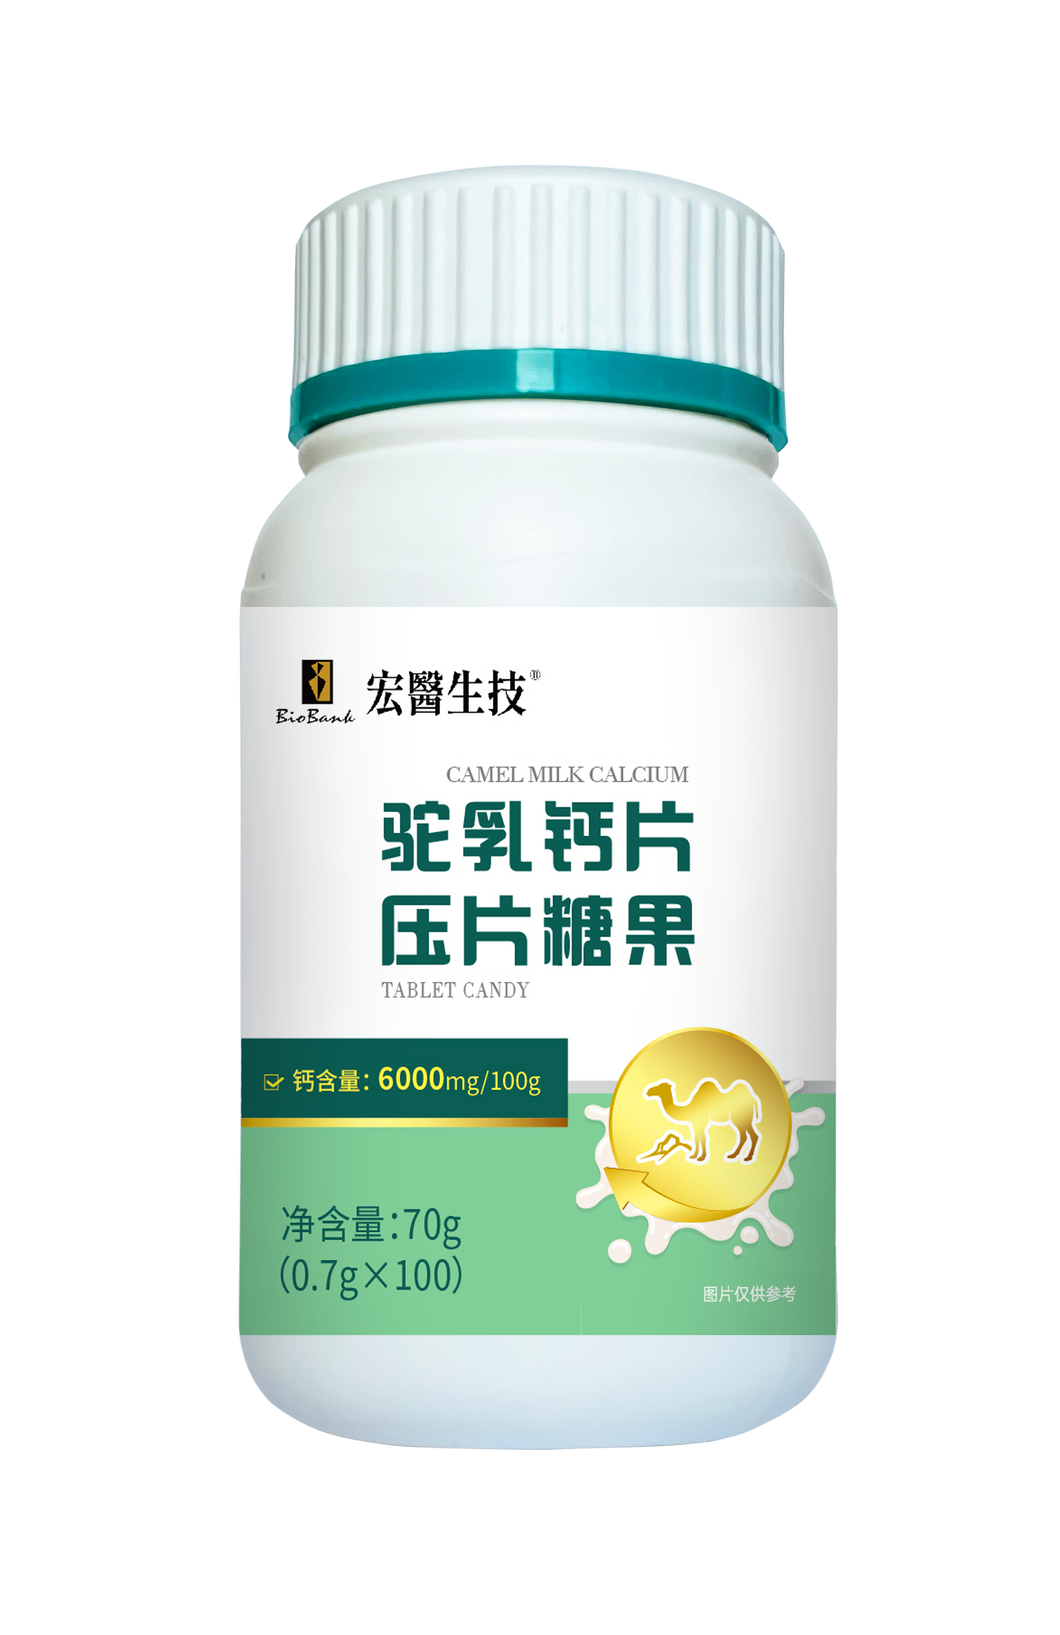 駝乳鈣片壓片糖果0.7gx100片/瓶【大金宏醫BioBank】中國限定販售